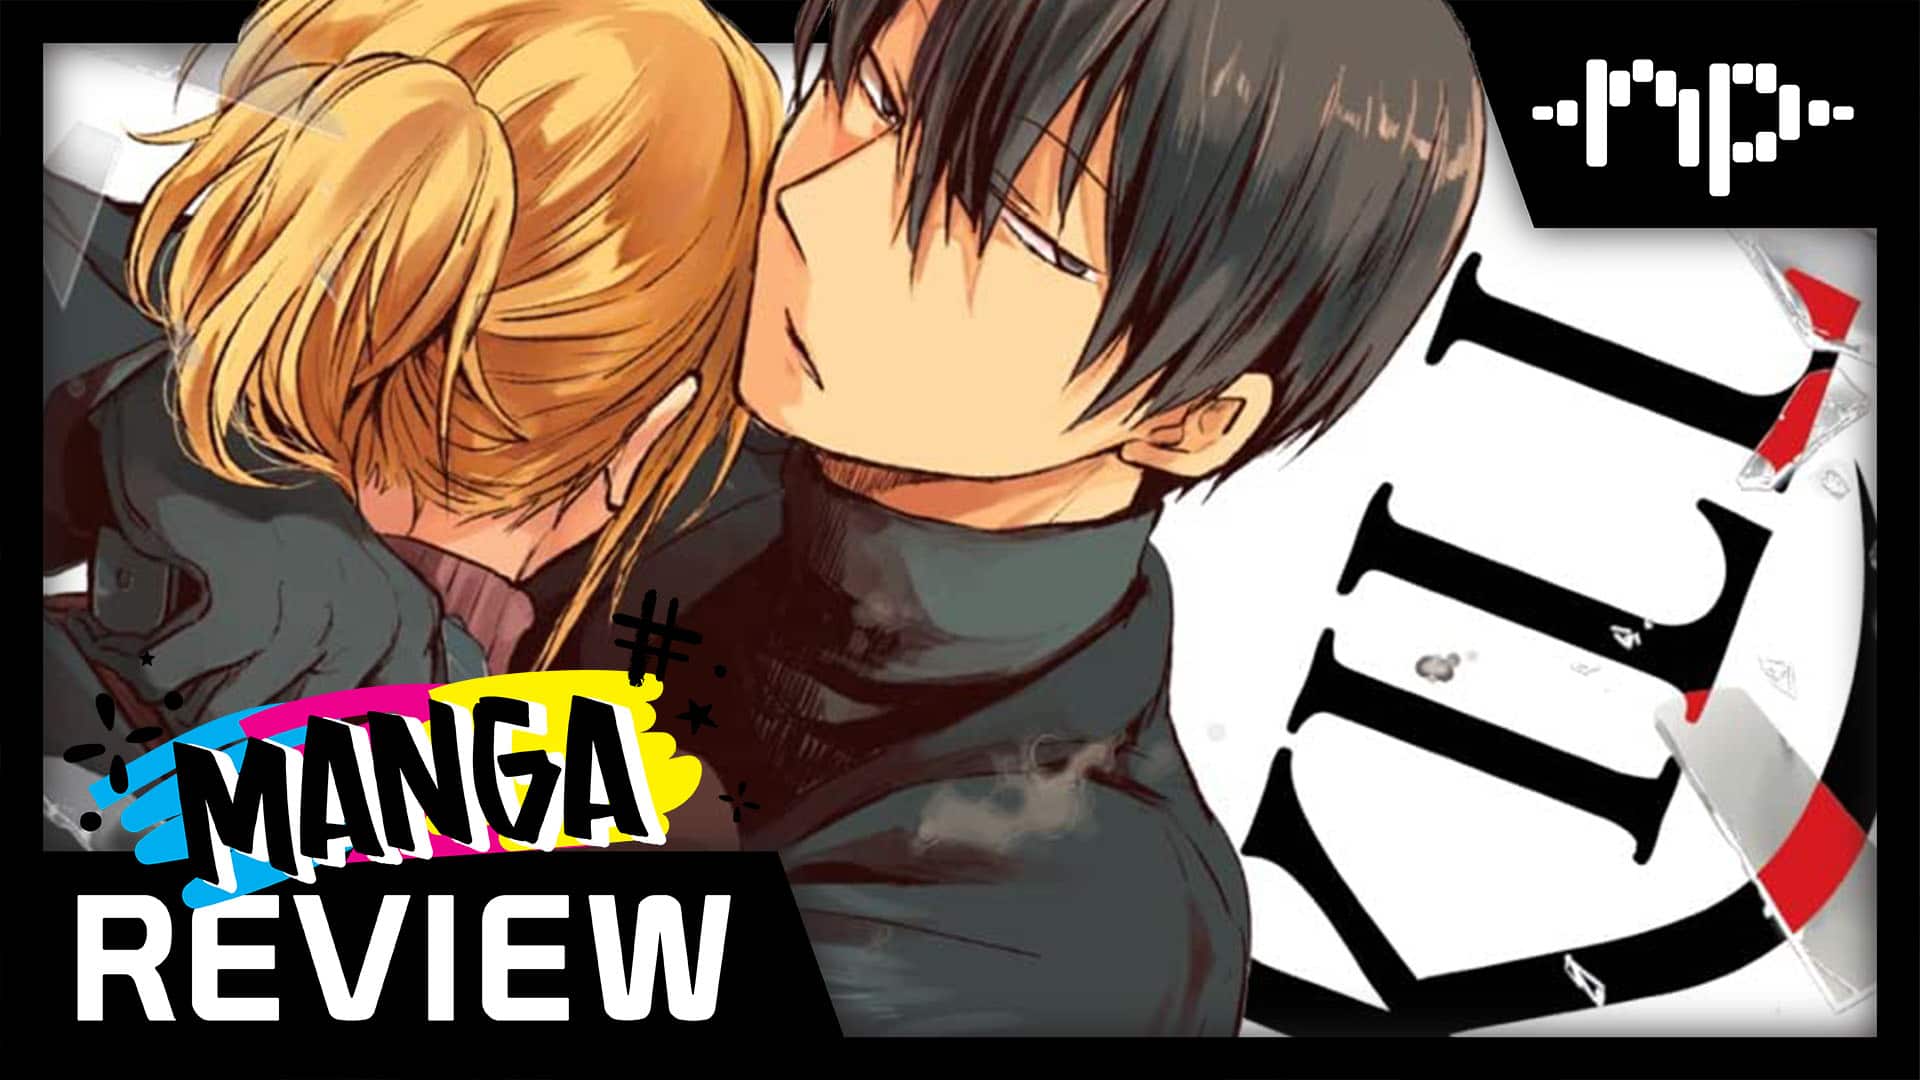 Kaguya-Sama: First Kiss Expands Its Main Characters' Depth